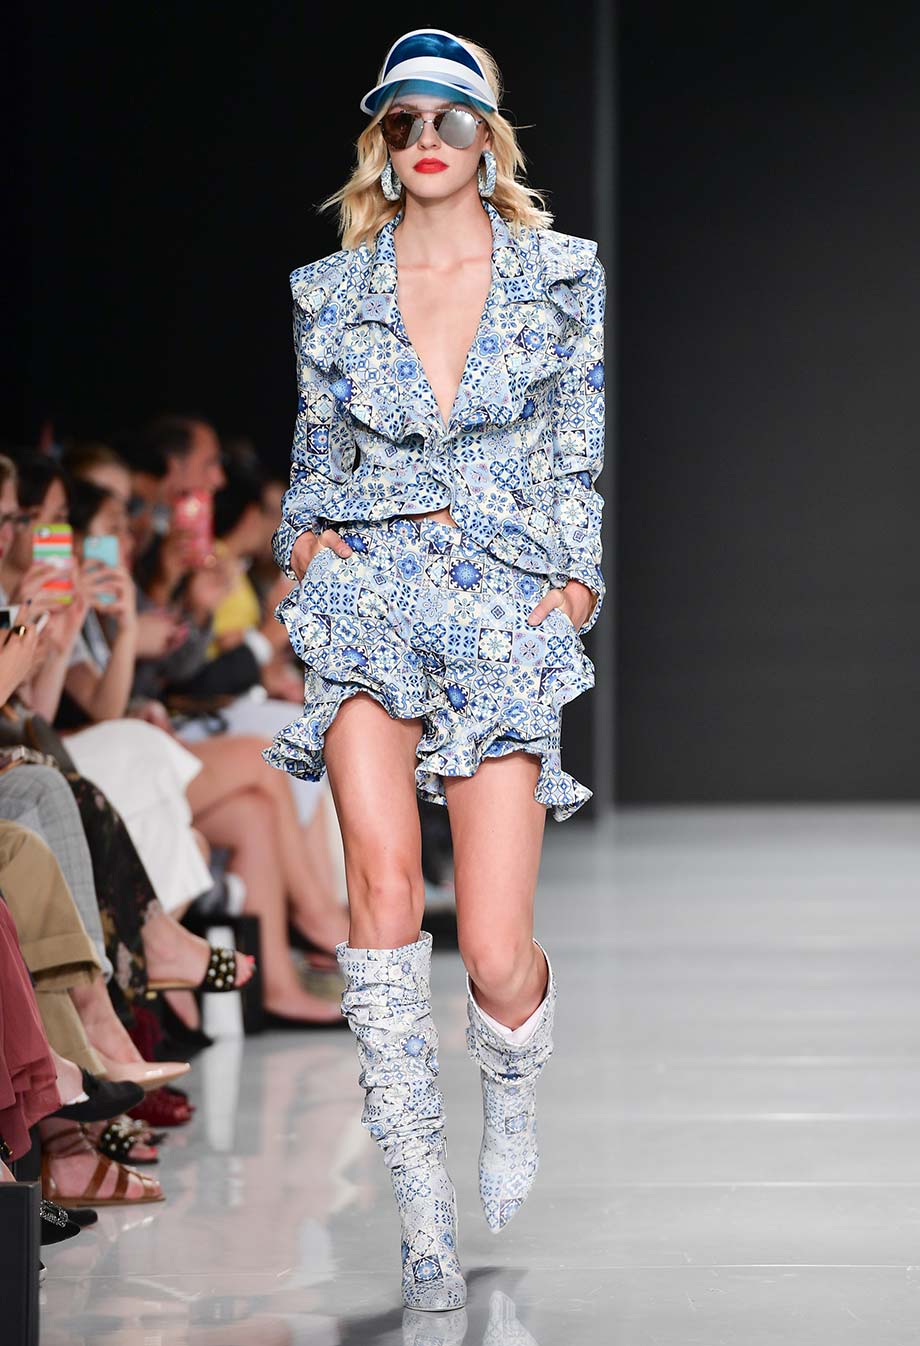 Hilary MacMillan, catwalk, patterns, boots, fashion coordinates